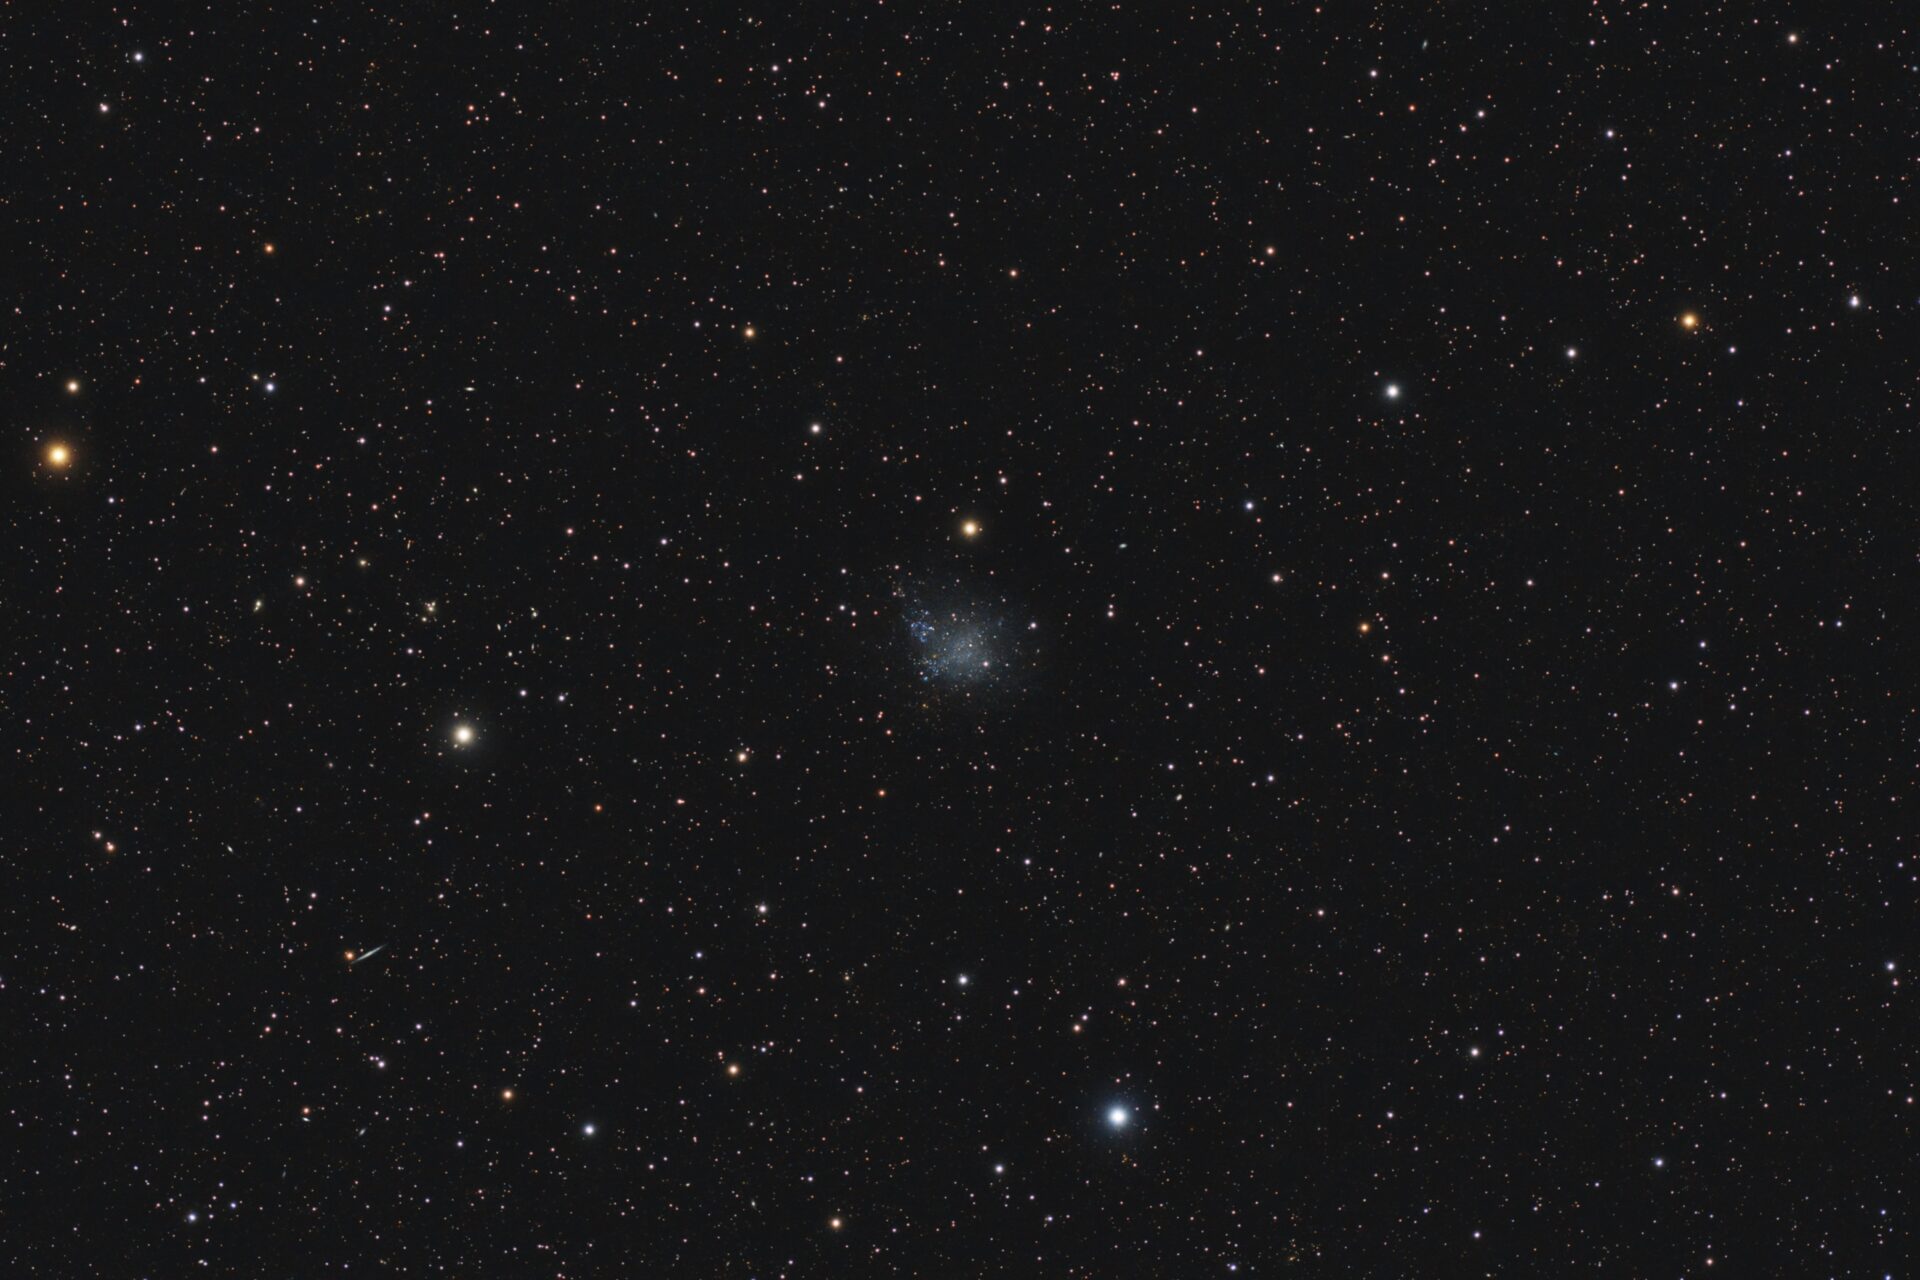 IC 1613